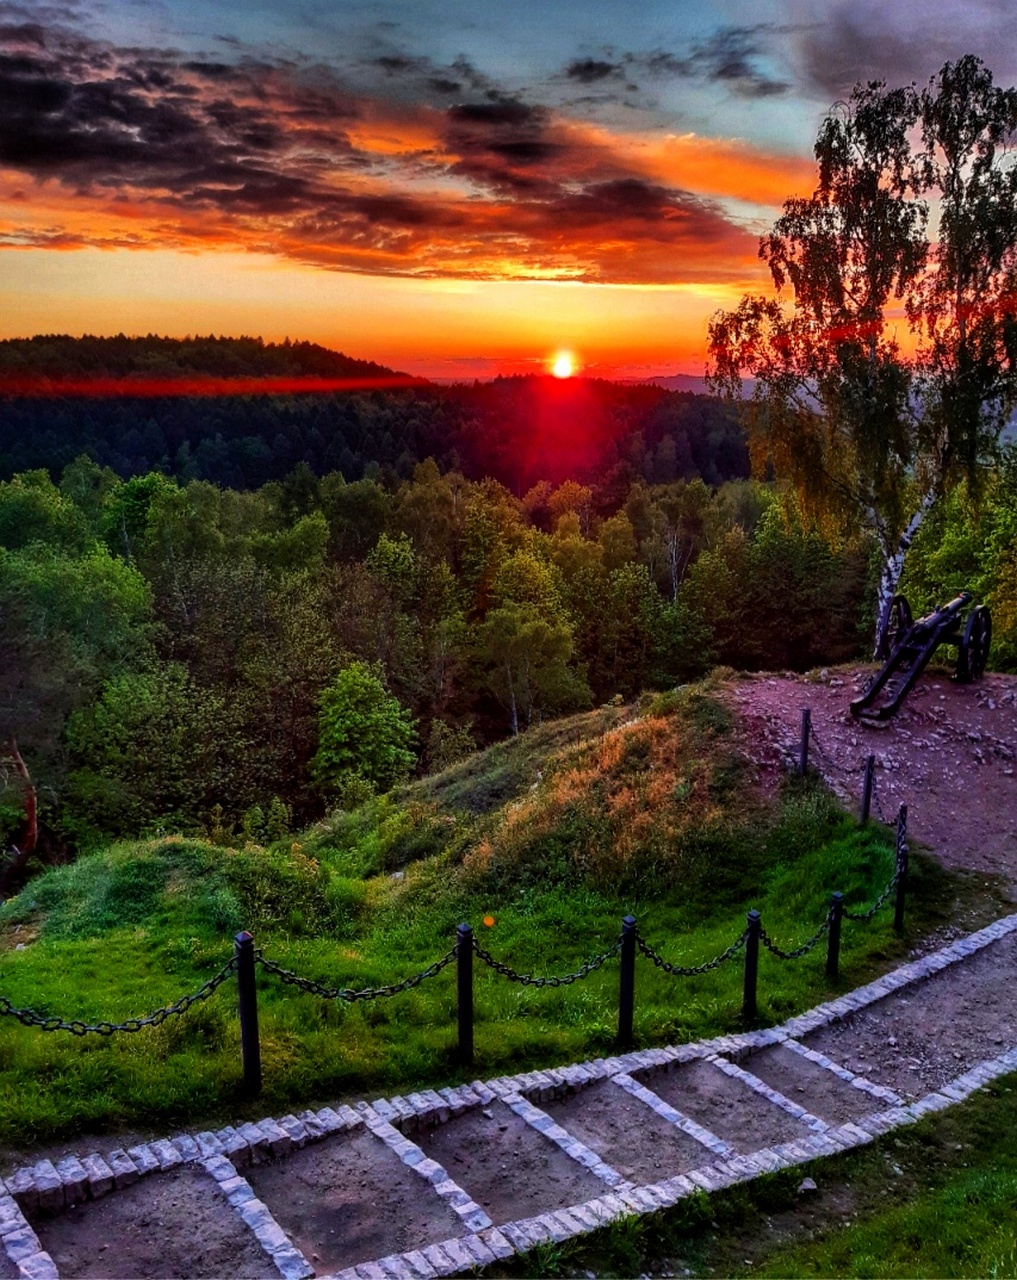 Ewa Majewska, zdjęcie przedstawia wiosenny zachód słońca widziany z zamkowego wzgórza w Chęcinach